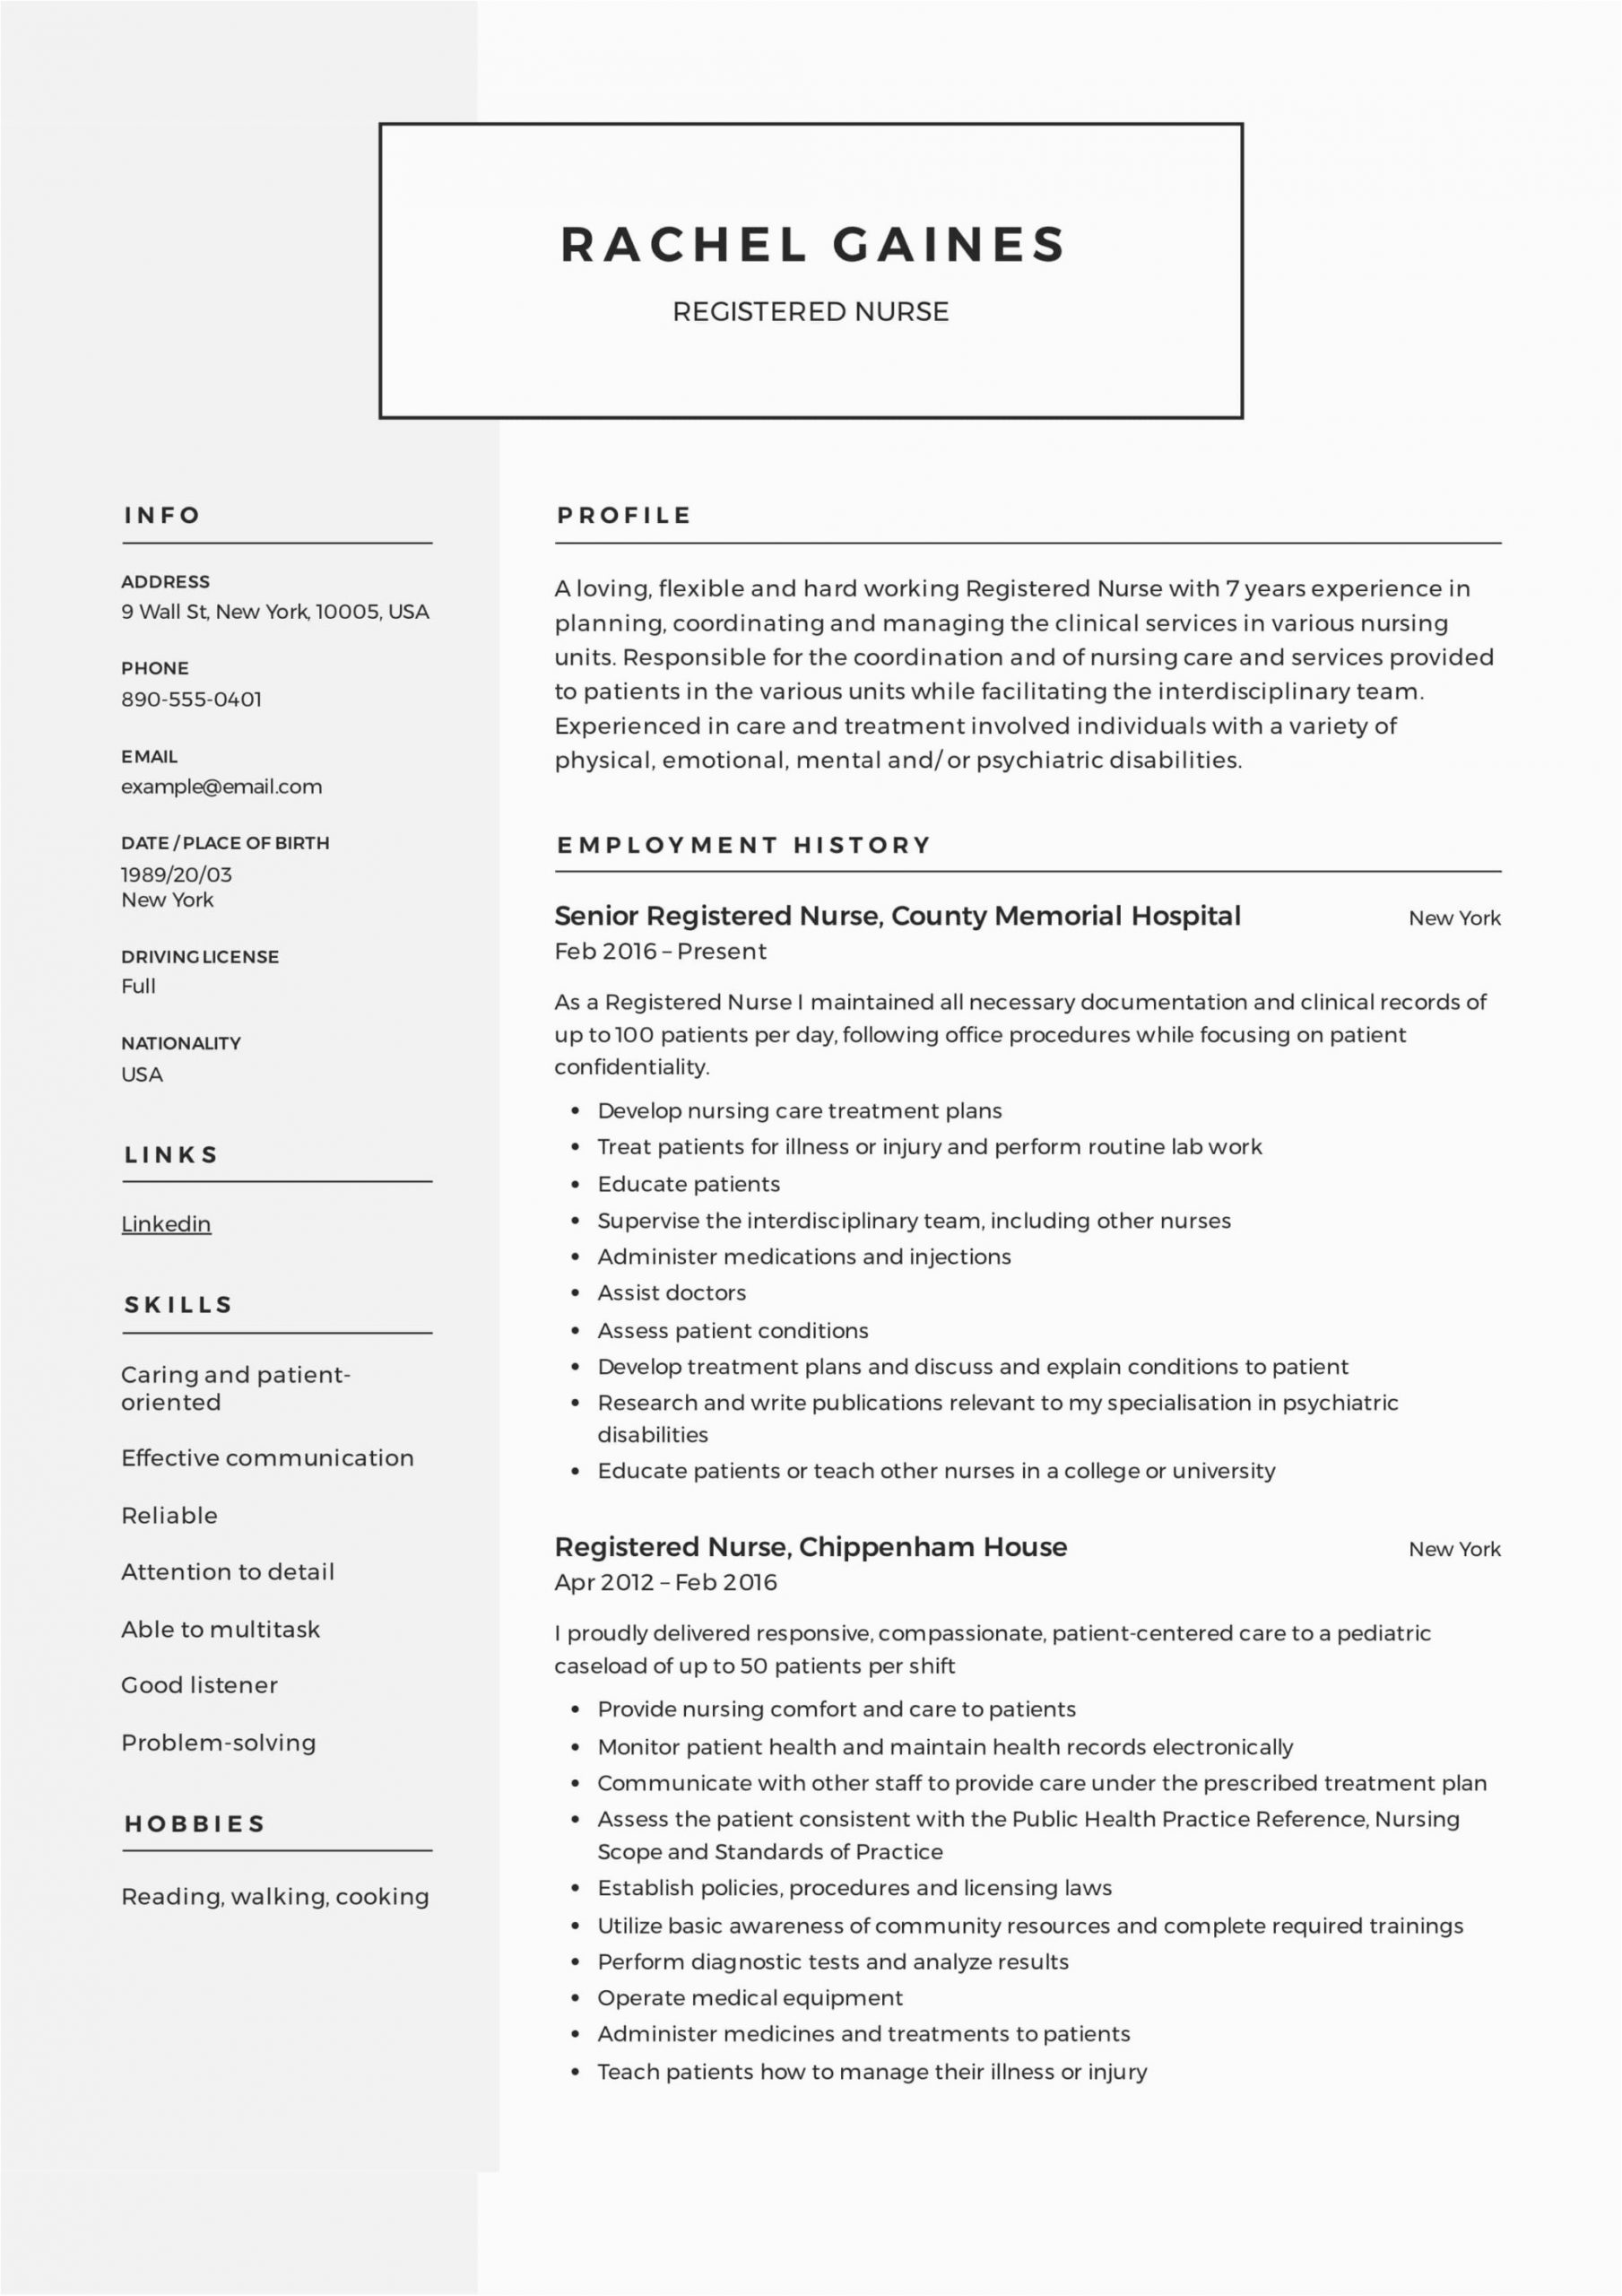 Sample Resume for Registered Nurse Position Registered Nurse Resume Sample & Writing Guide